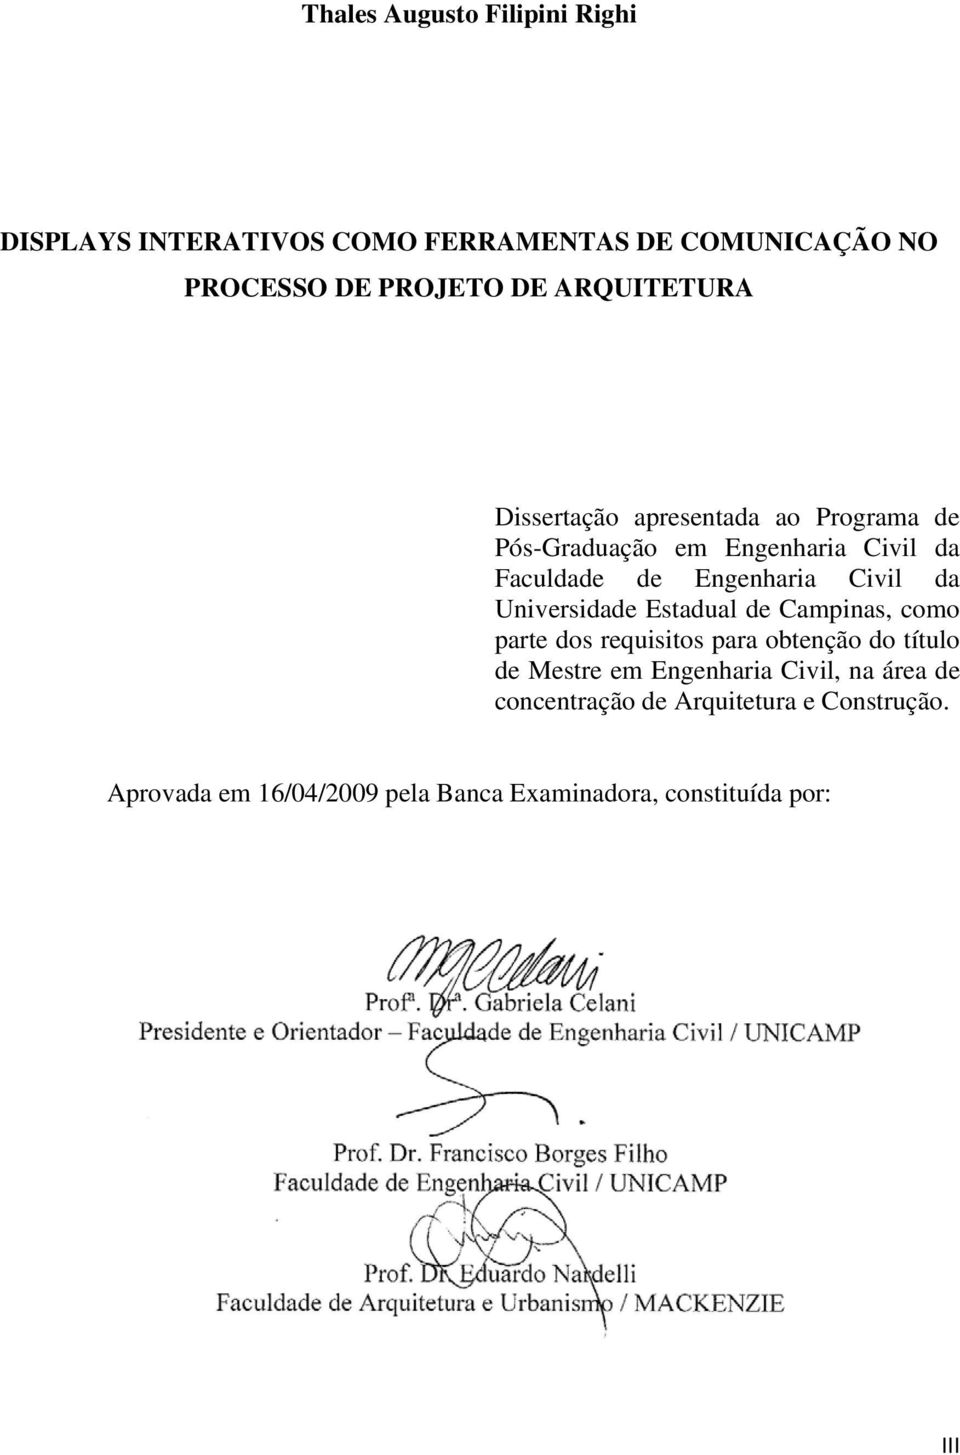 Civil da Universidade Estadual de Campinas, como parte dos requisitos para obtenção do título de Mestre em